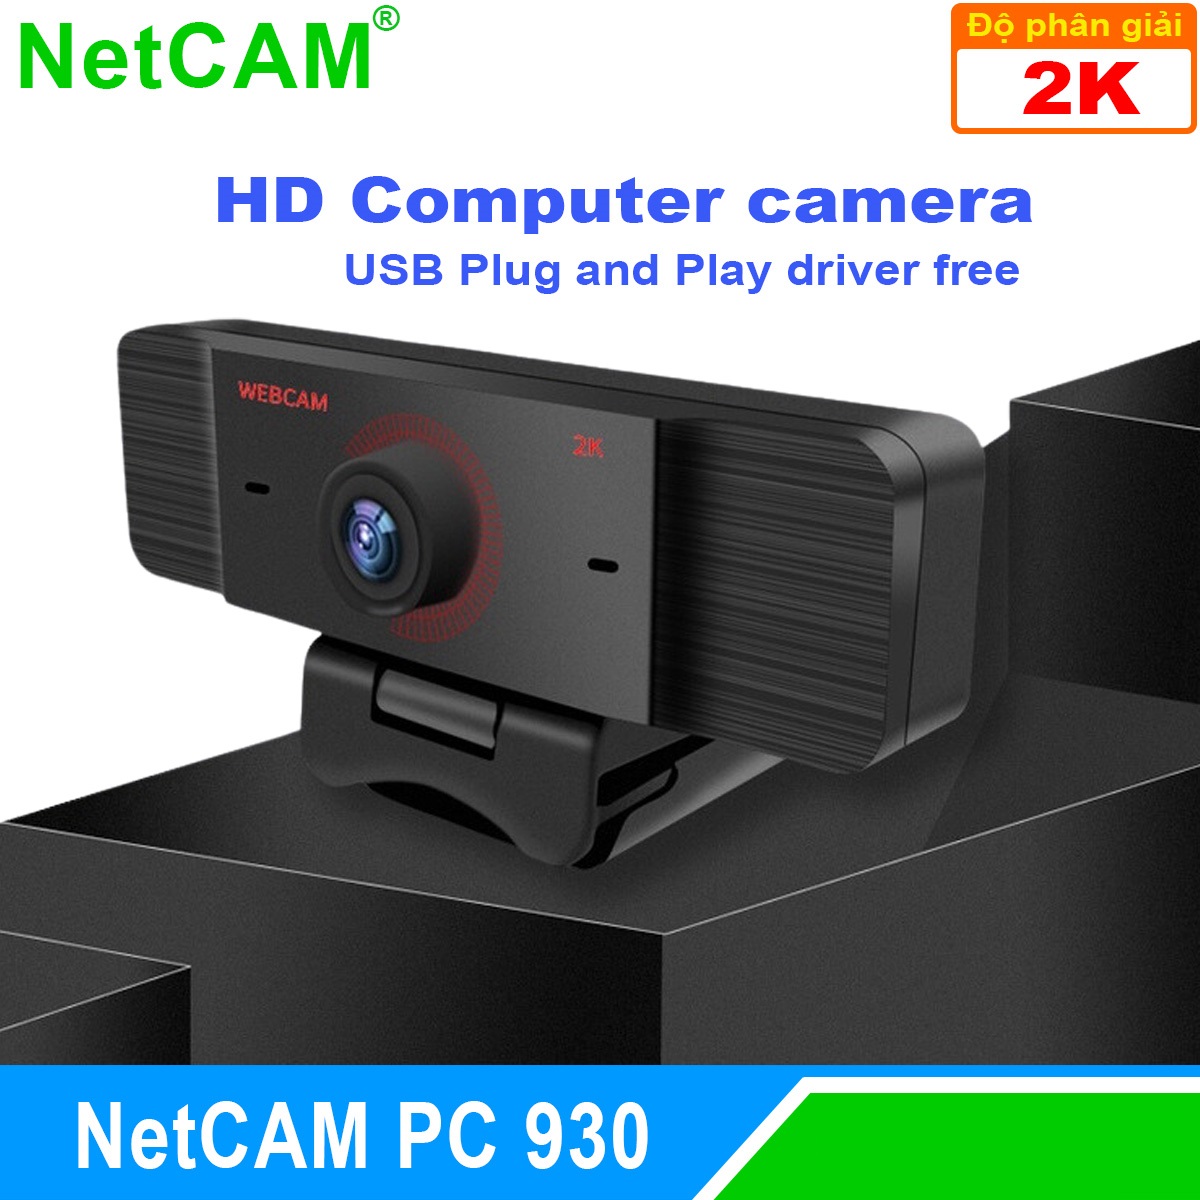 Webcam NetCAM PC 930 độ phân giải 2K - Hàng Chính Hãng